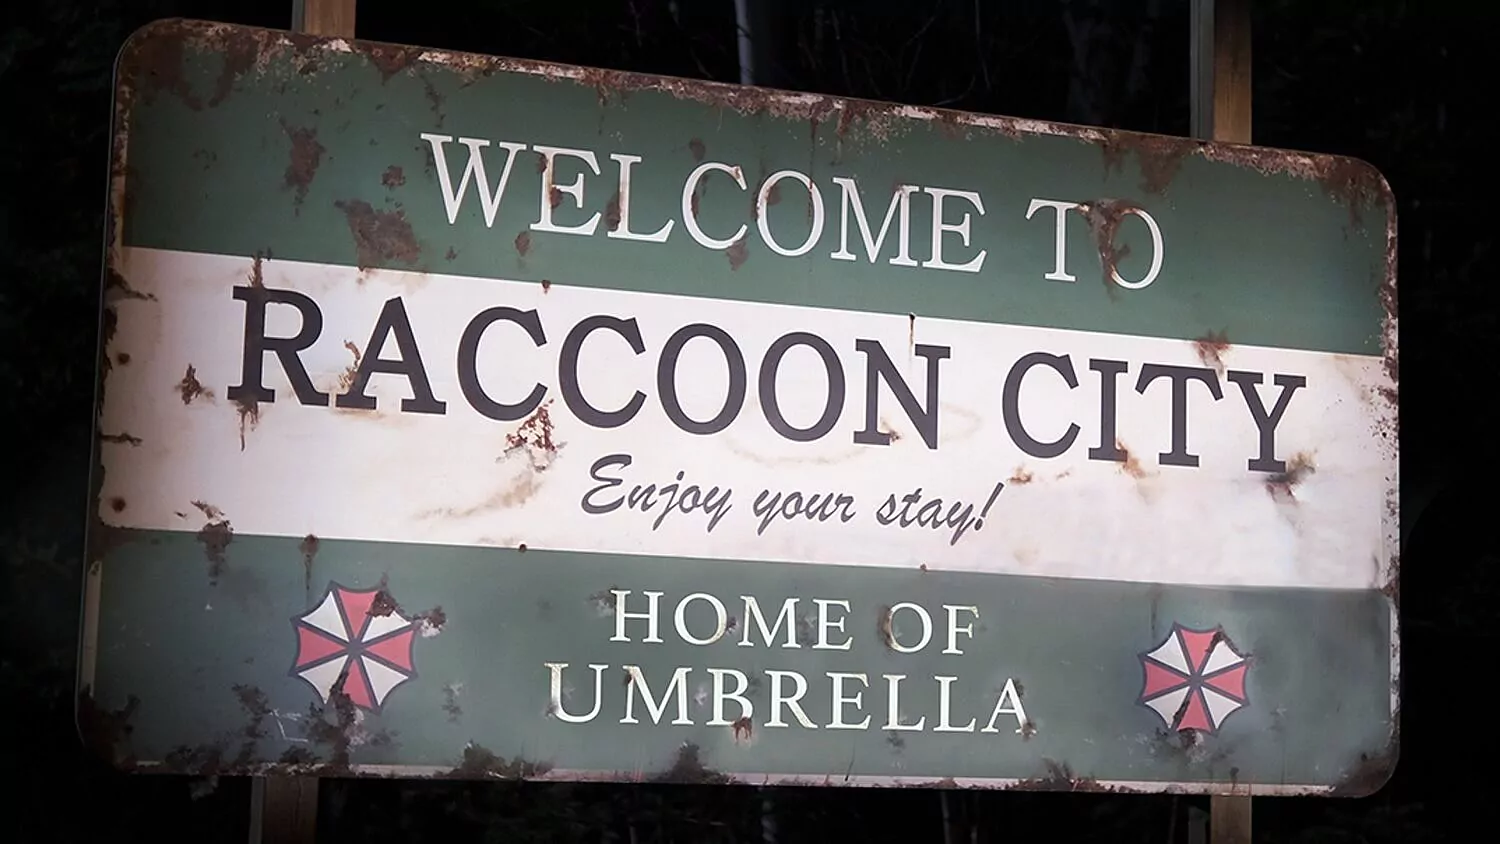 Resident Evil Bem-vindo a Raccoon City já tem um trailer 5 curiosidades que você não percebeu